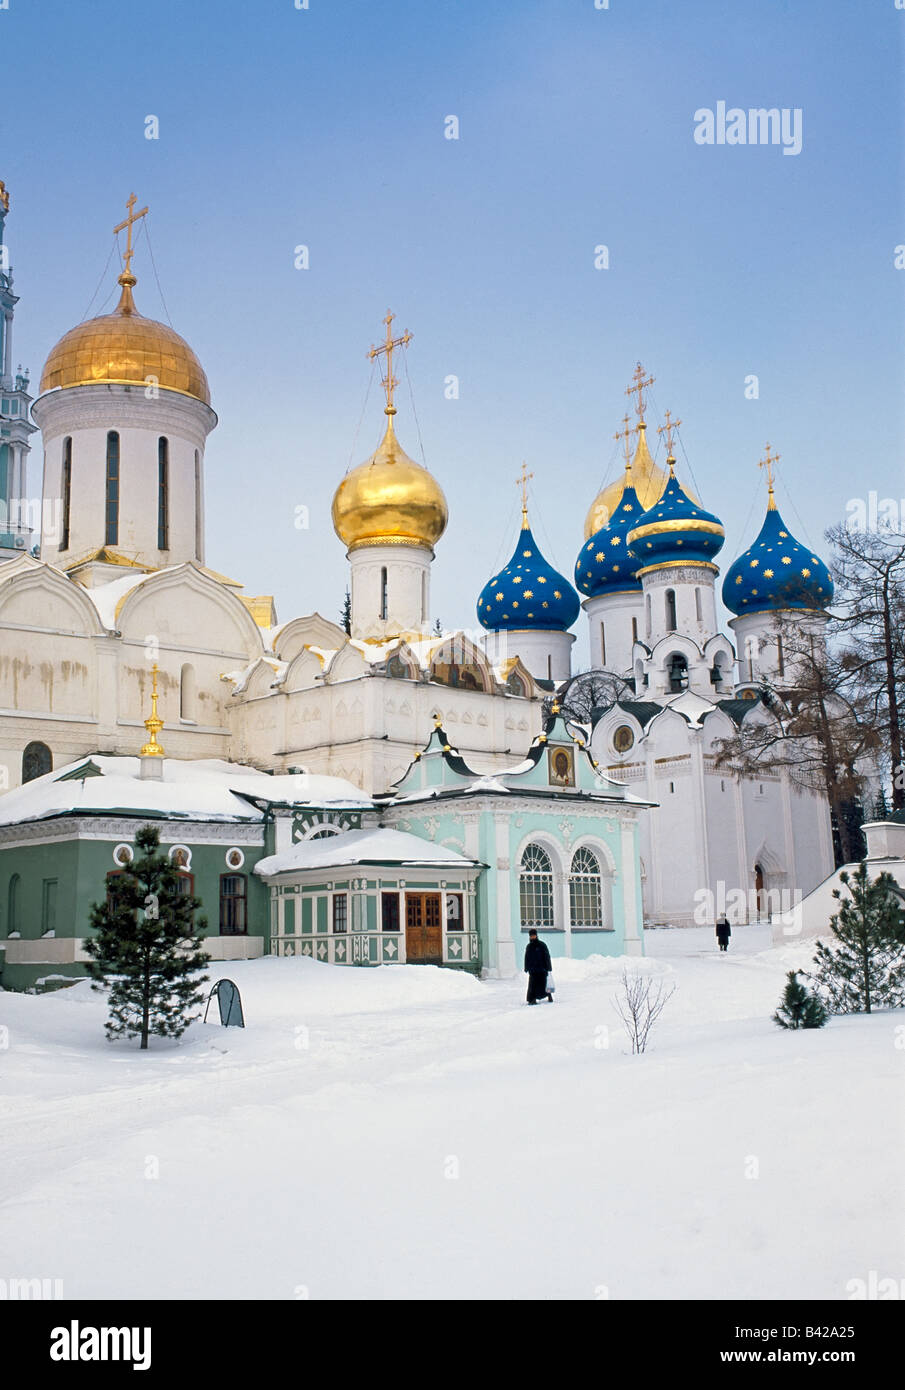 La Russie, région de Moscou, Serguiev Posad, Monastère de la Trinité Saint-serge de cathédrale de l'Assomption dans la neige de l'hiver Banque D'Images